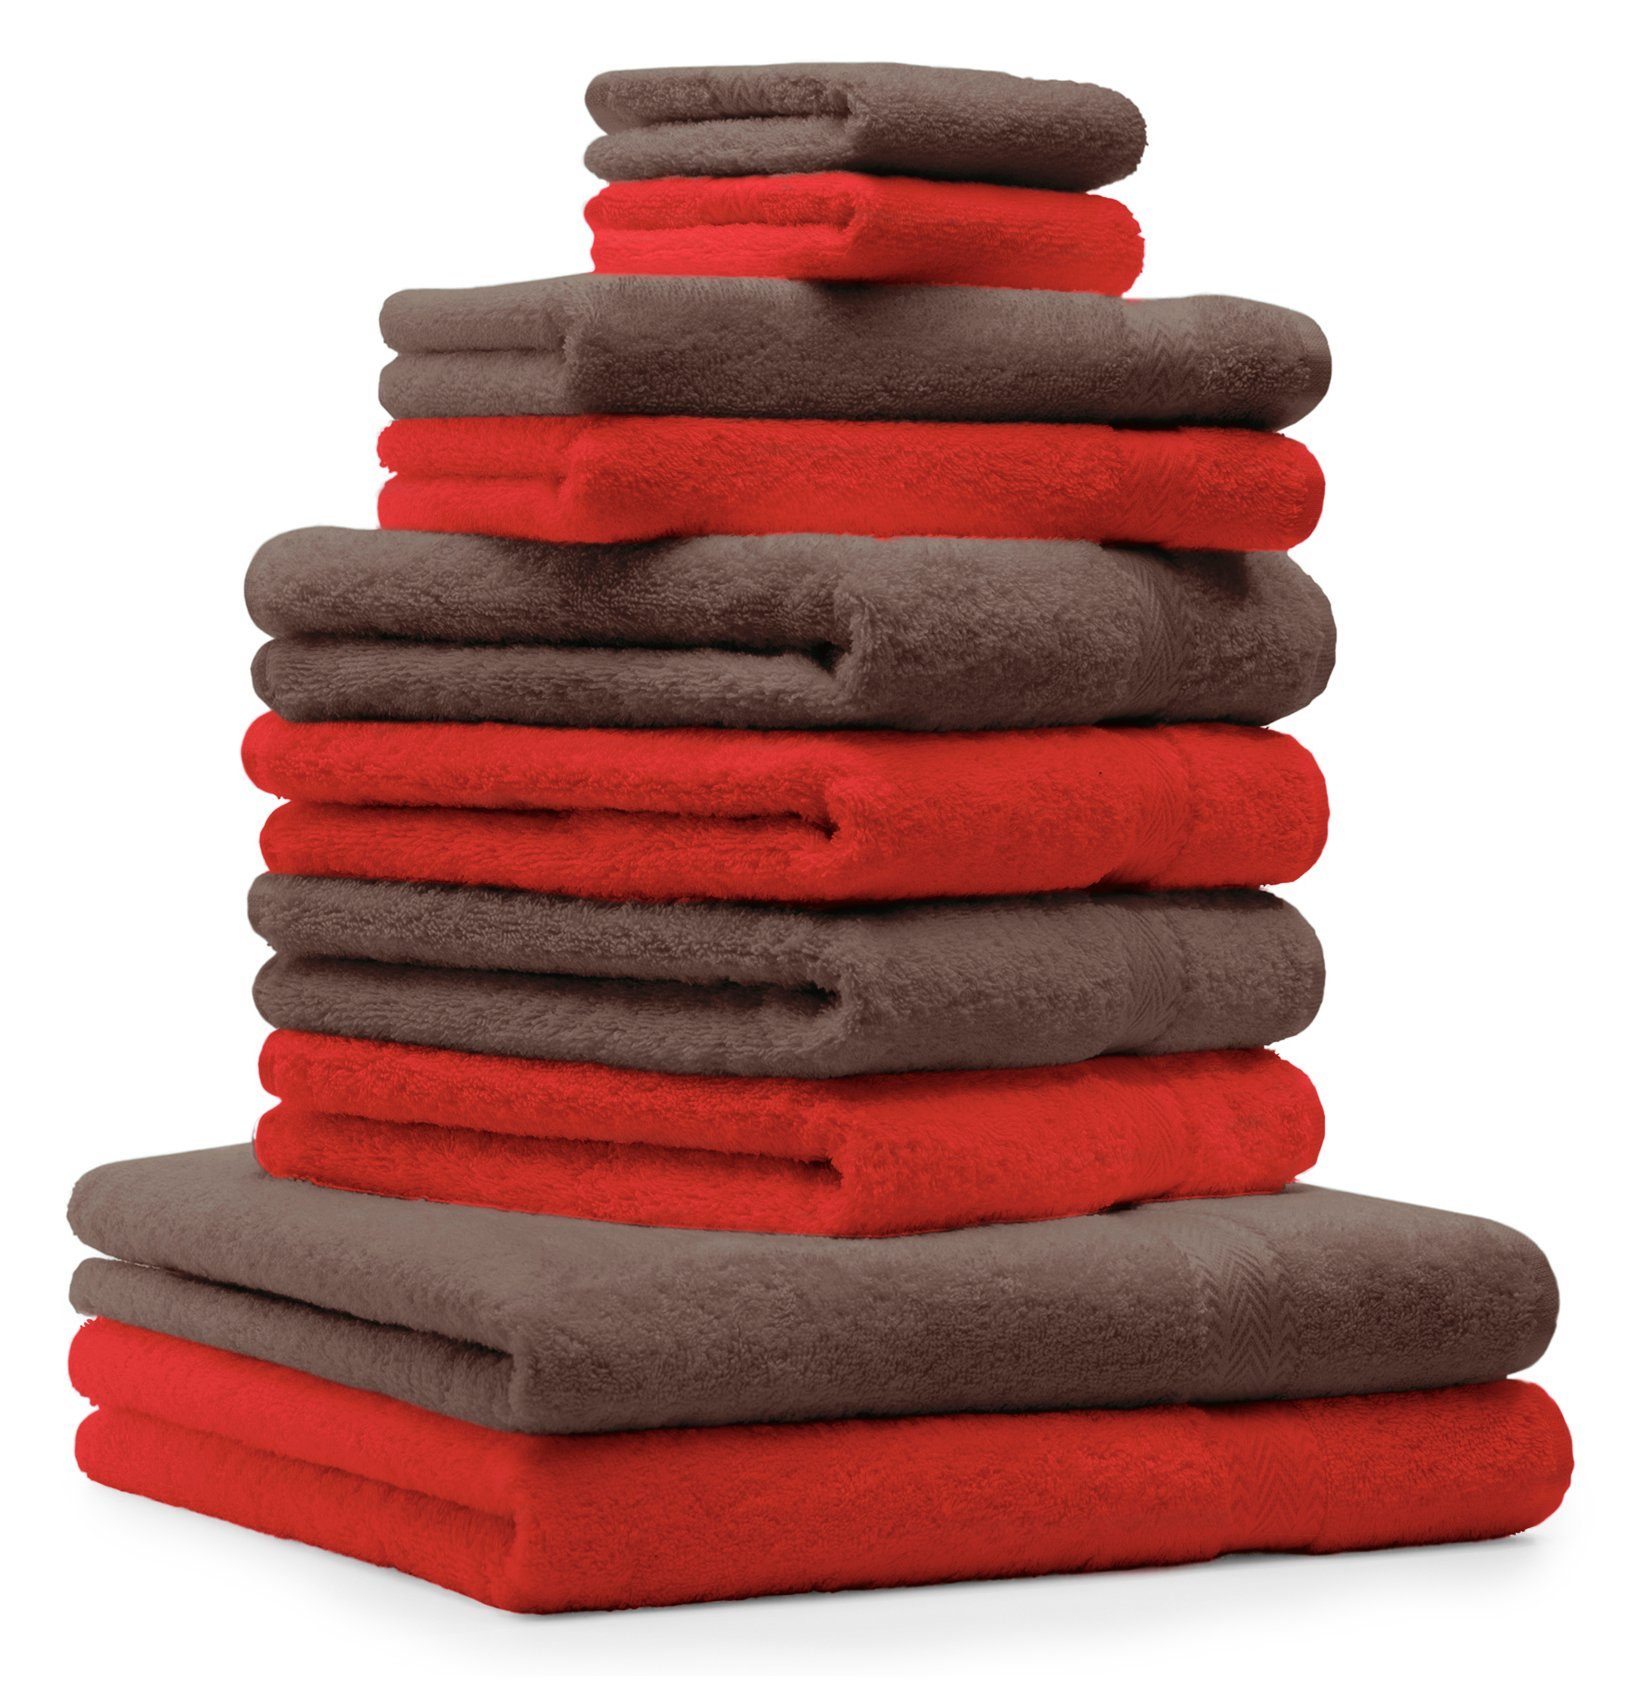 Betz Handtuch Set 10-TLG. Handtuch-Set Premium Farbe Rot & Nussbraun, 100% Baumwolle, (10-tlg)